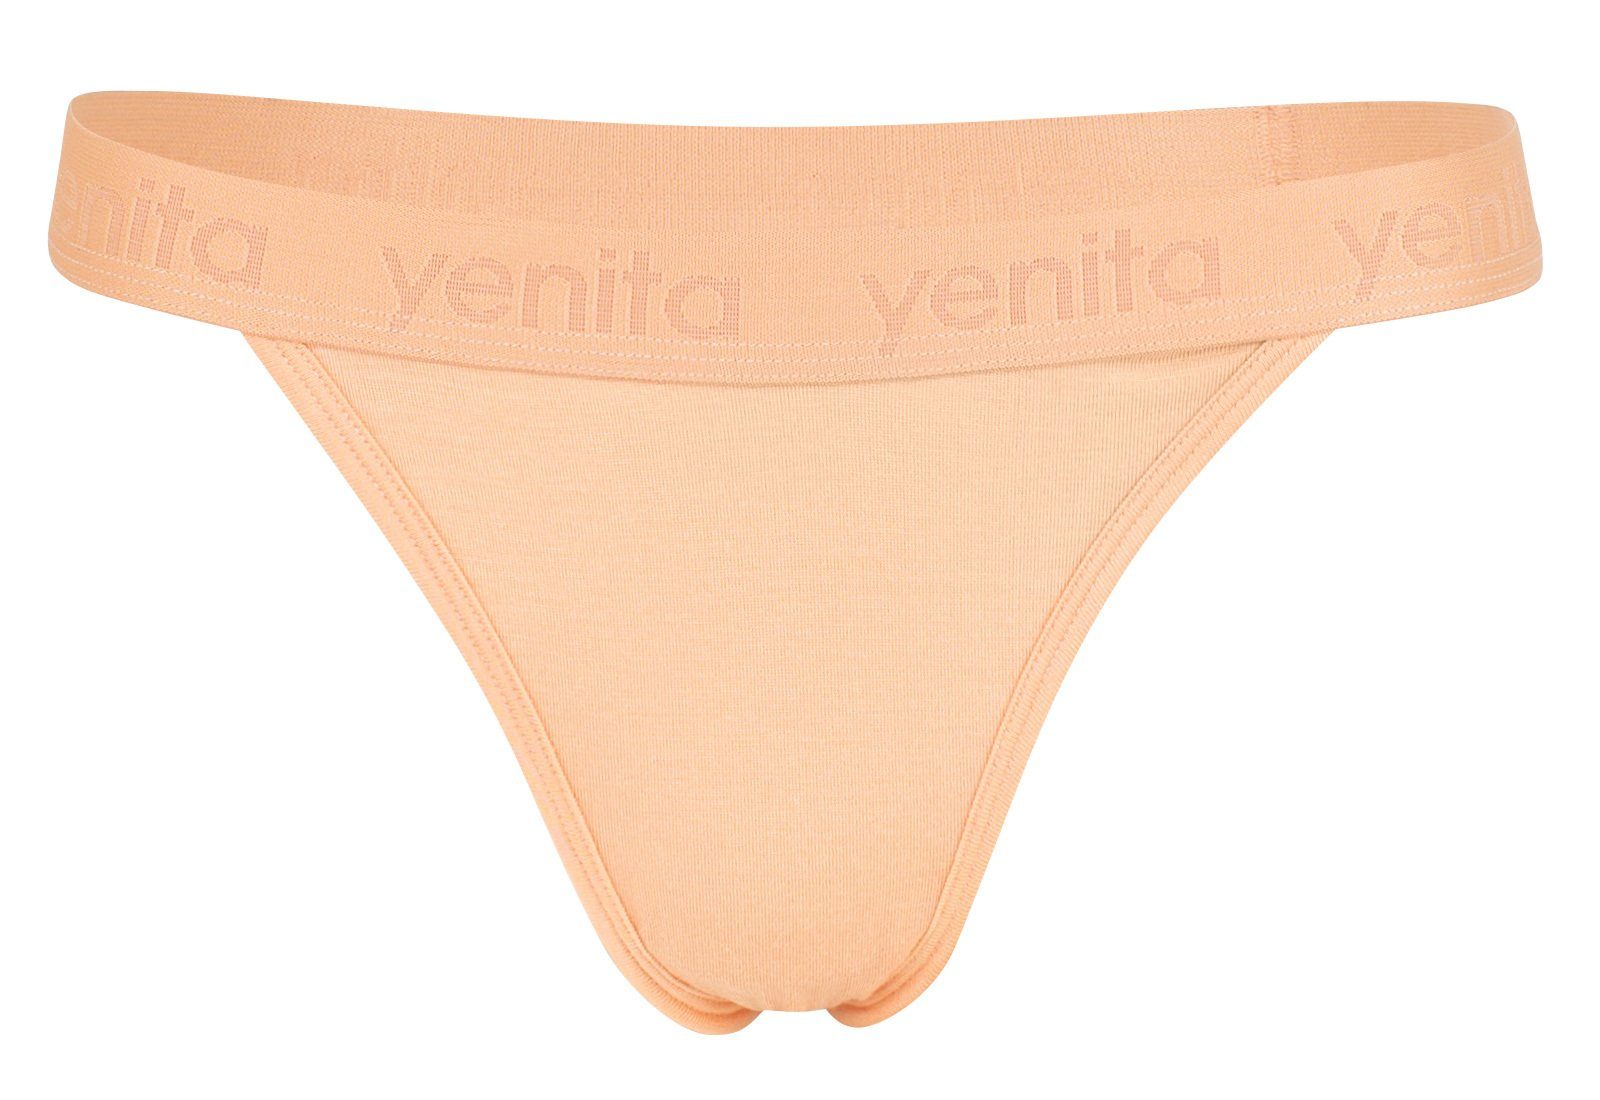 Yenita® String weich und atmungsaktiv durch Bambusviskose